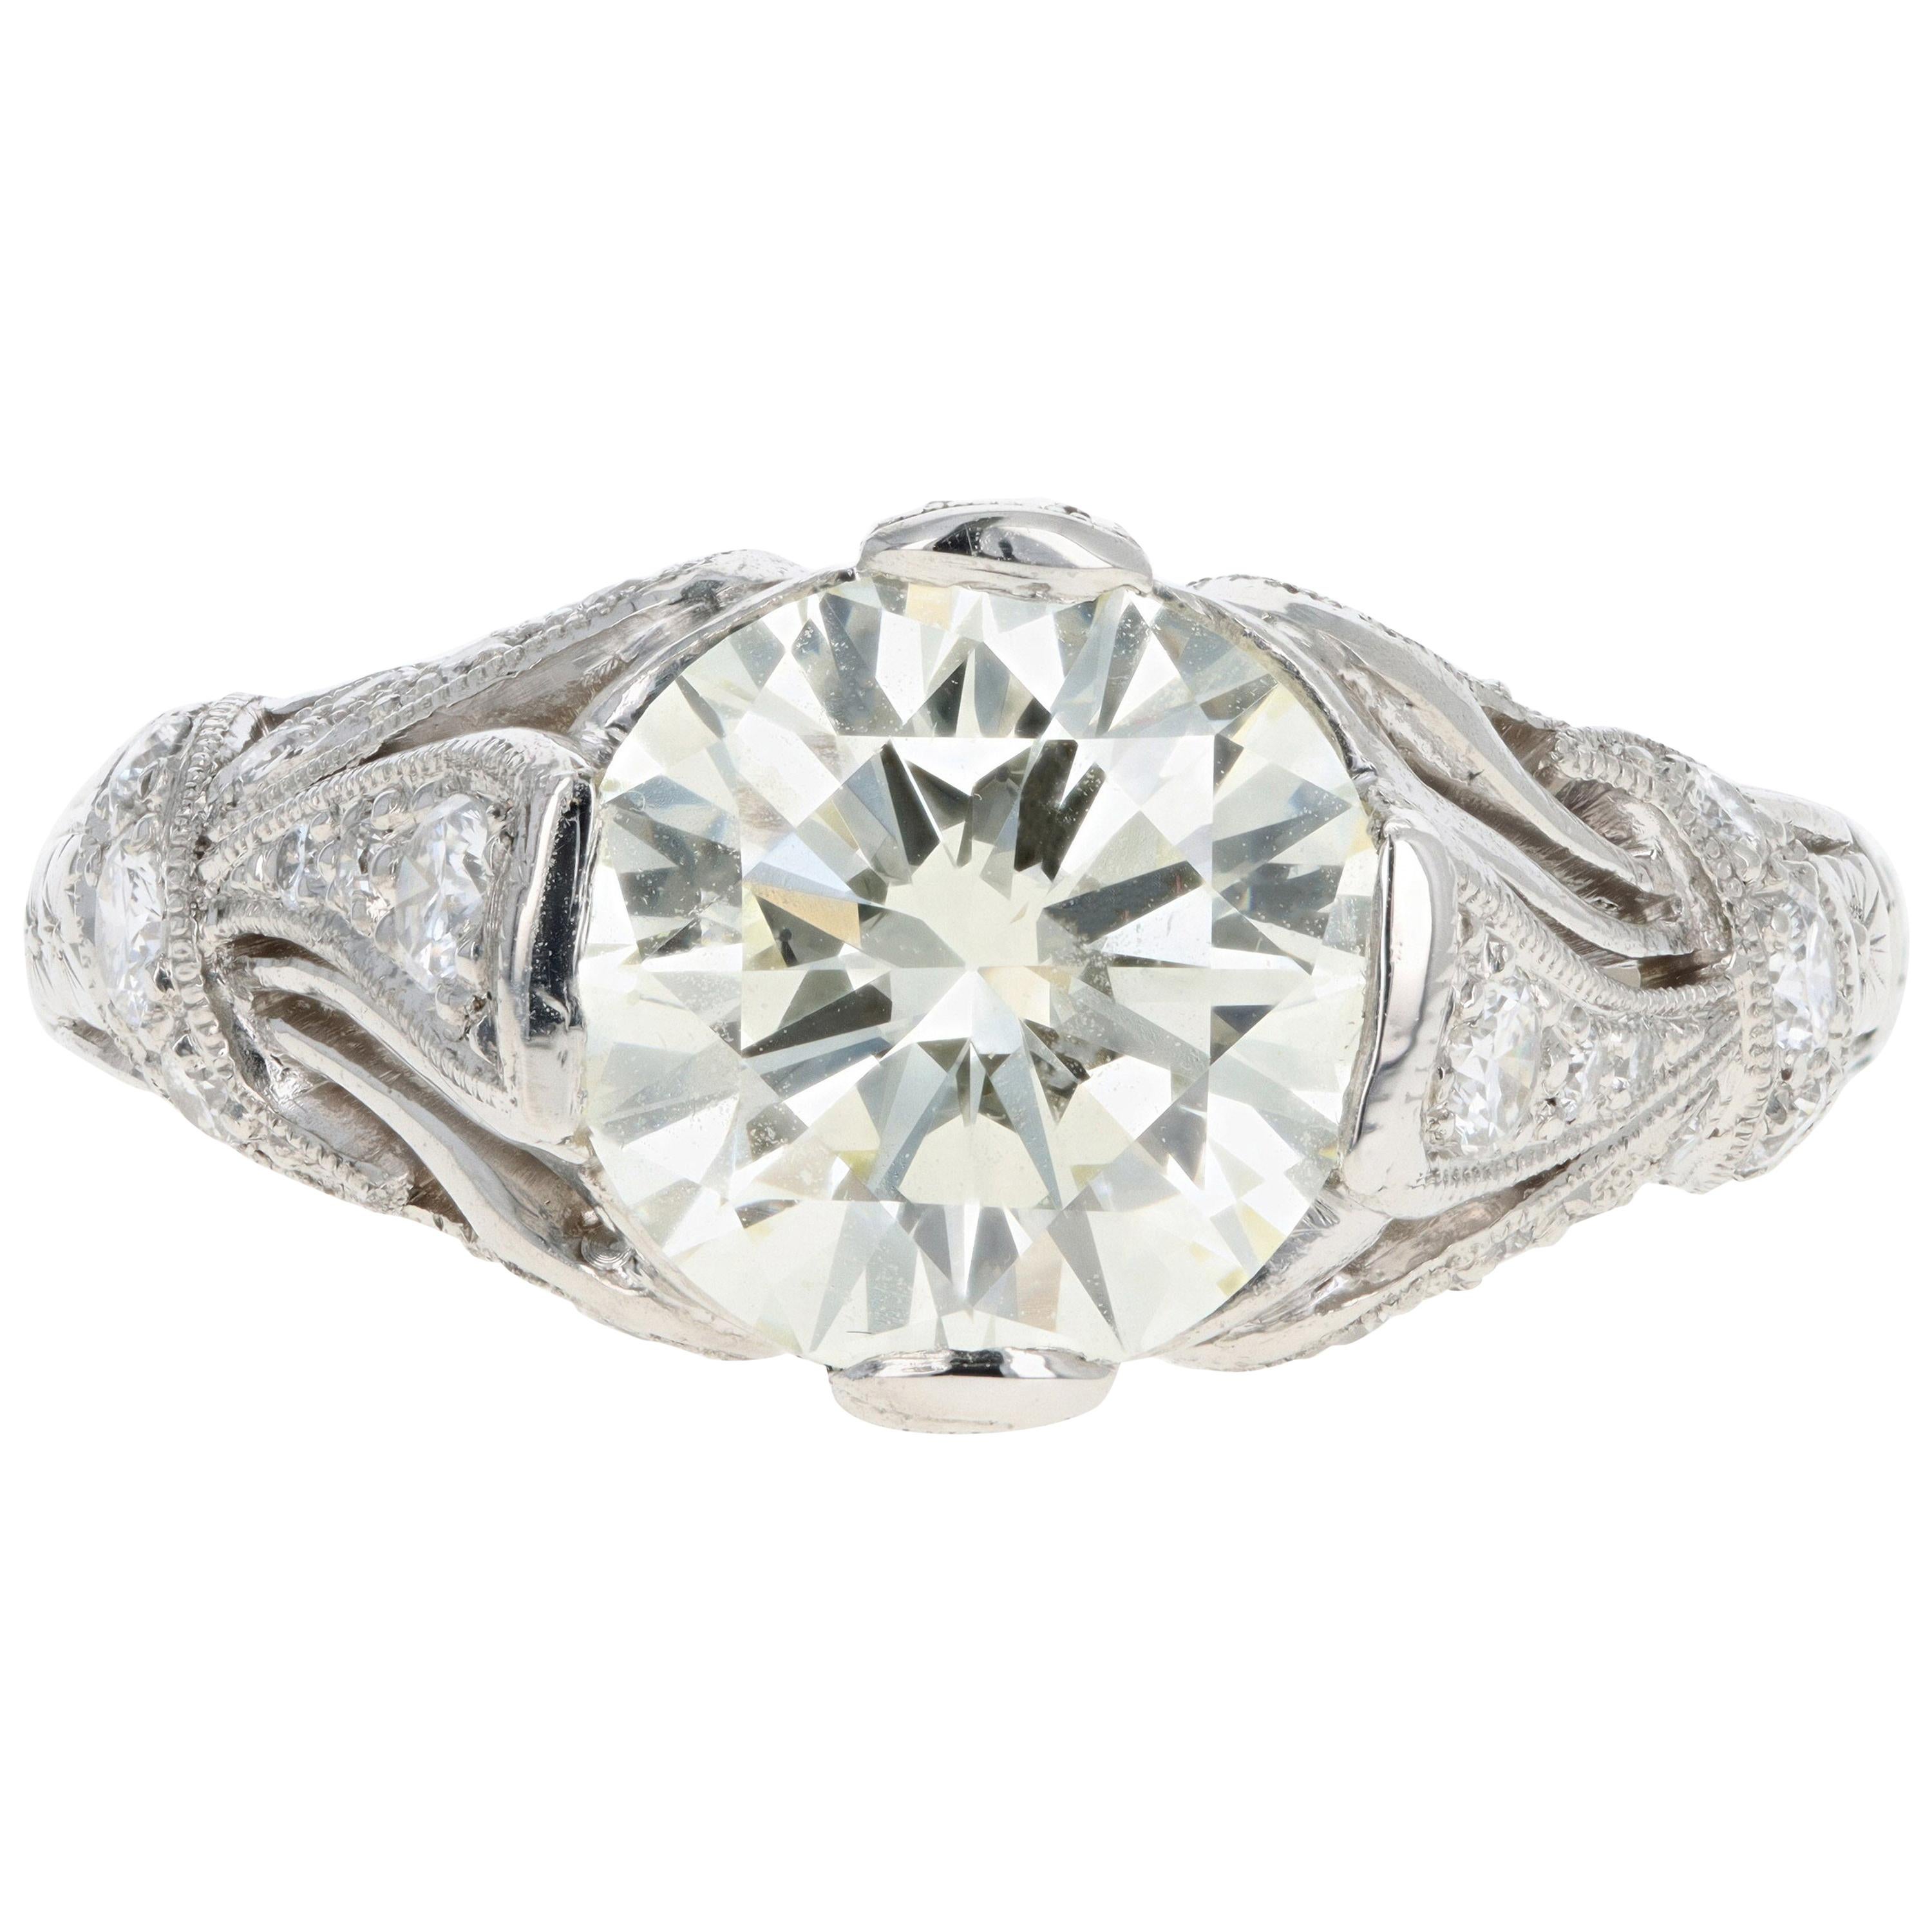 Art Deco Inspired 2.12 Carat Round Brilliant Cut Diamond Engagement Ring